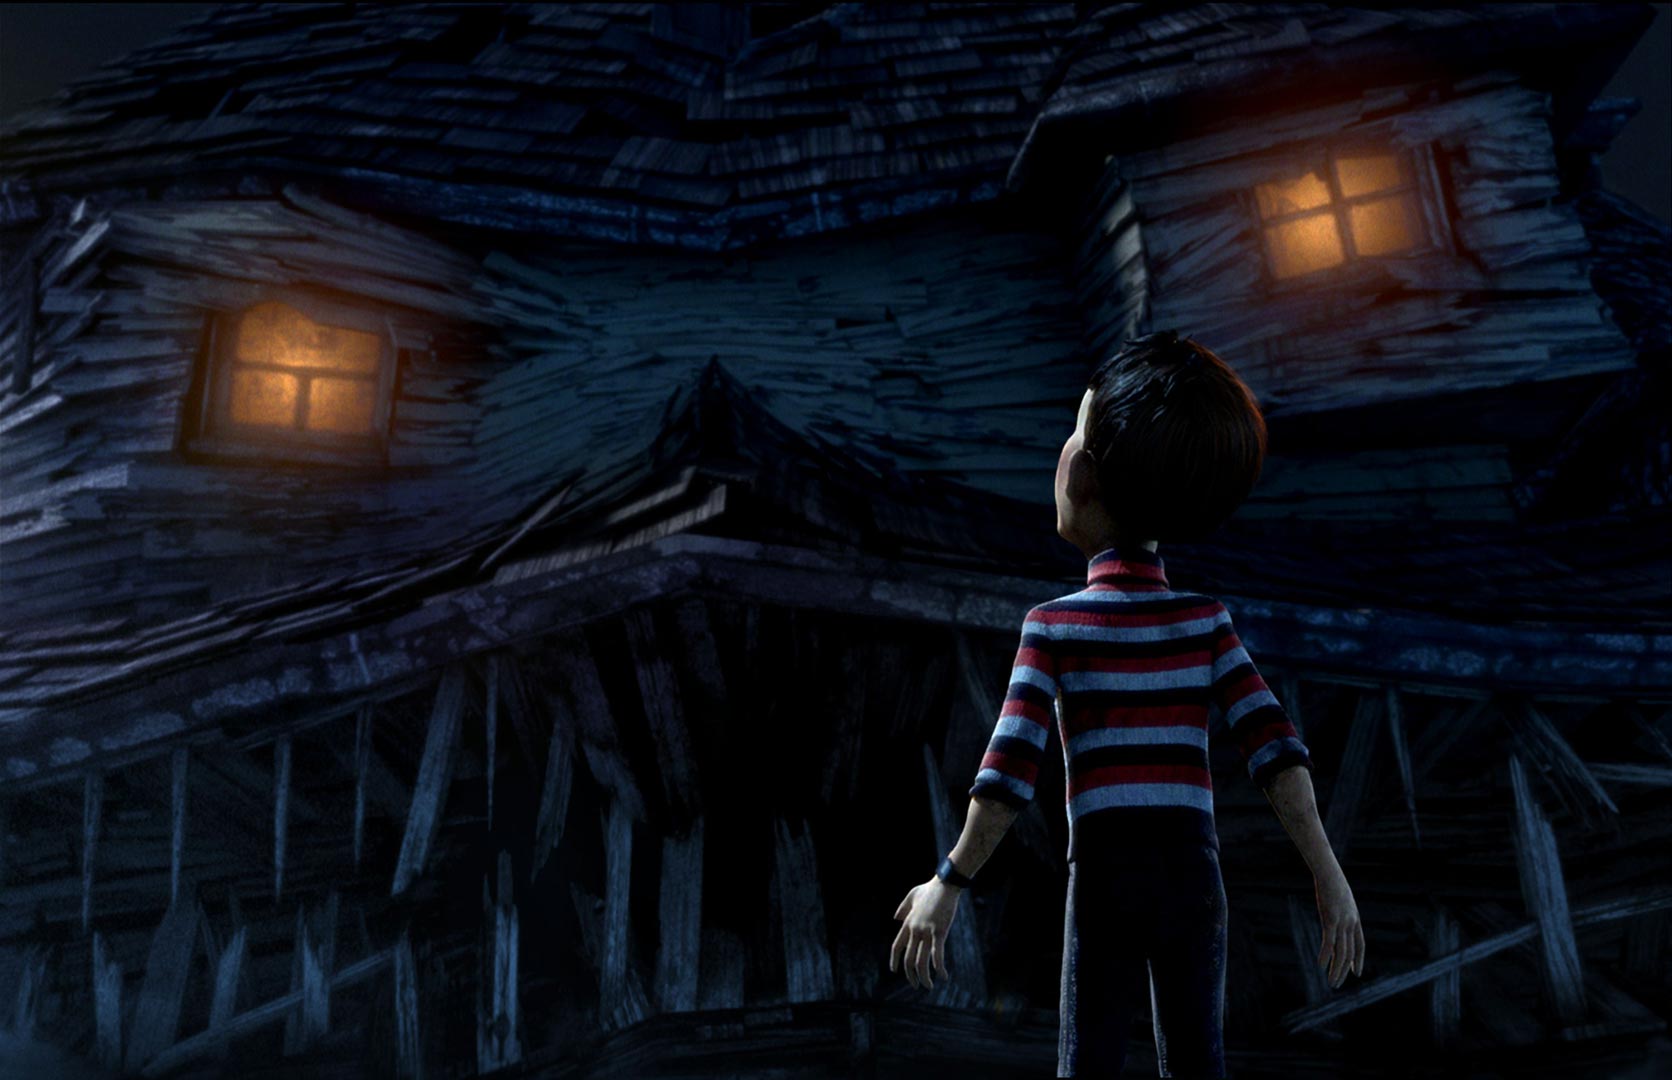 دی جی در انیمیشن خانه هیولا ایستاده جلوی خانه عجیب و ترسناک